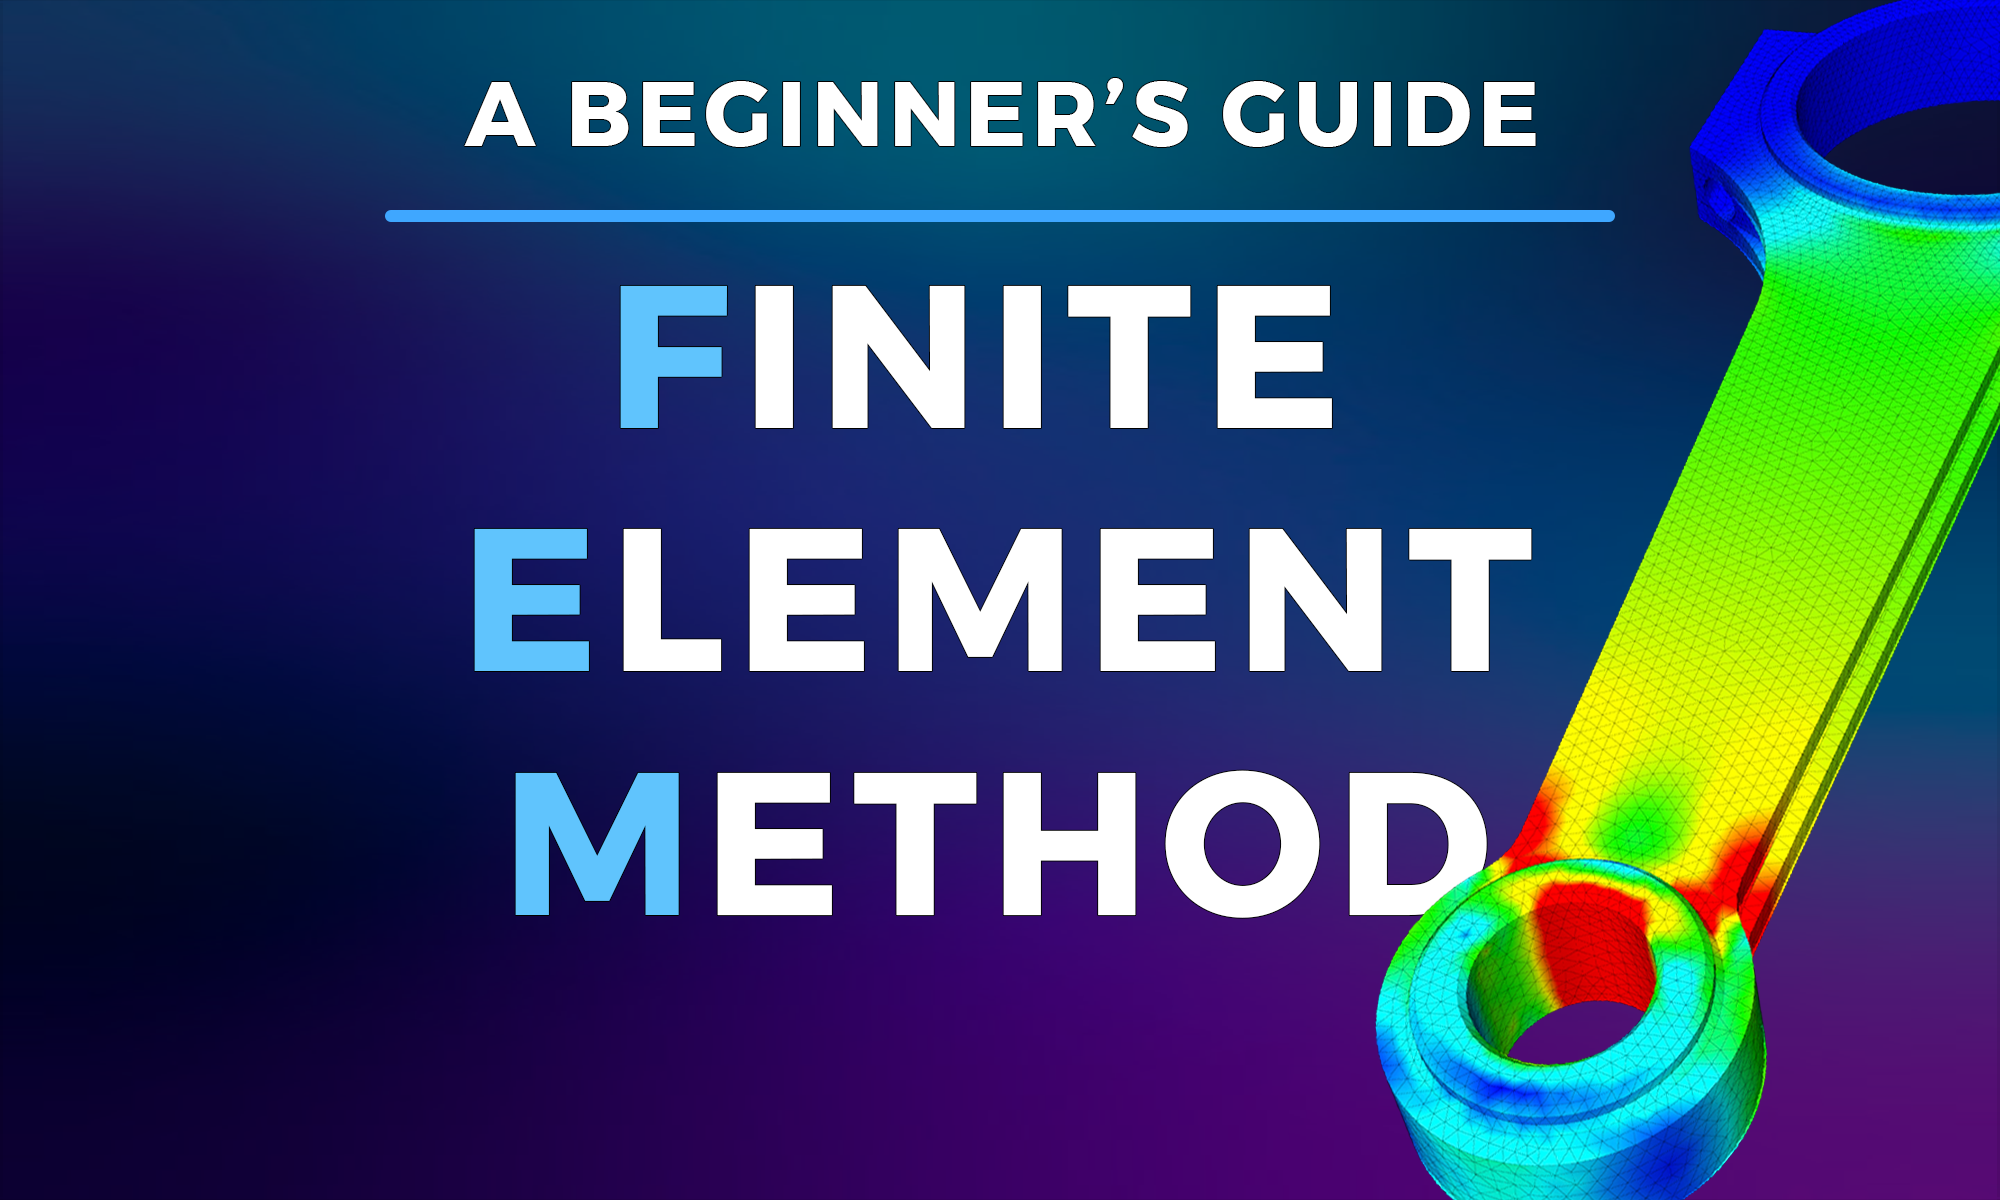 The Finite Element Method (FEM) – A Beginner's Guide